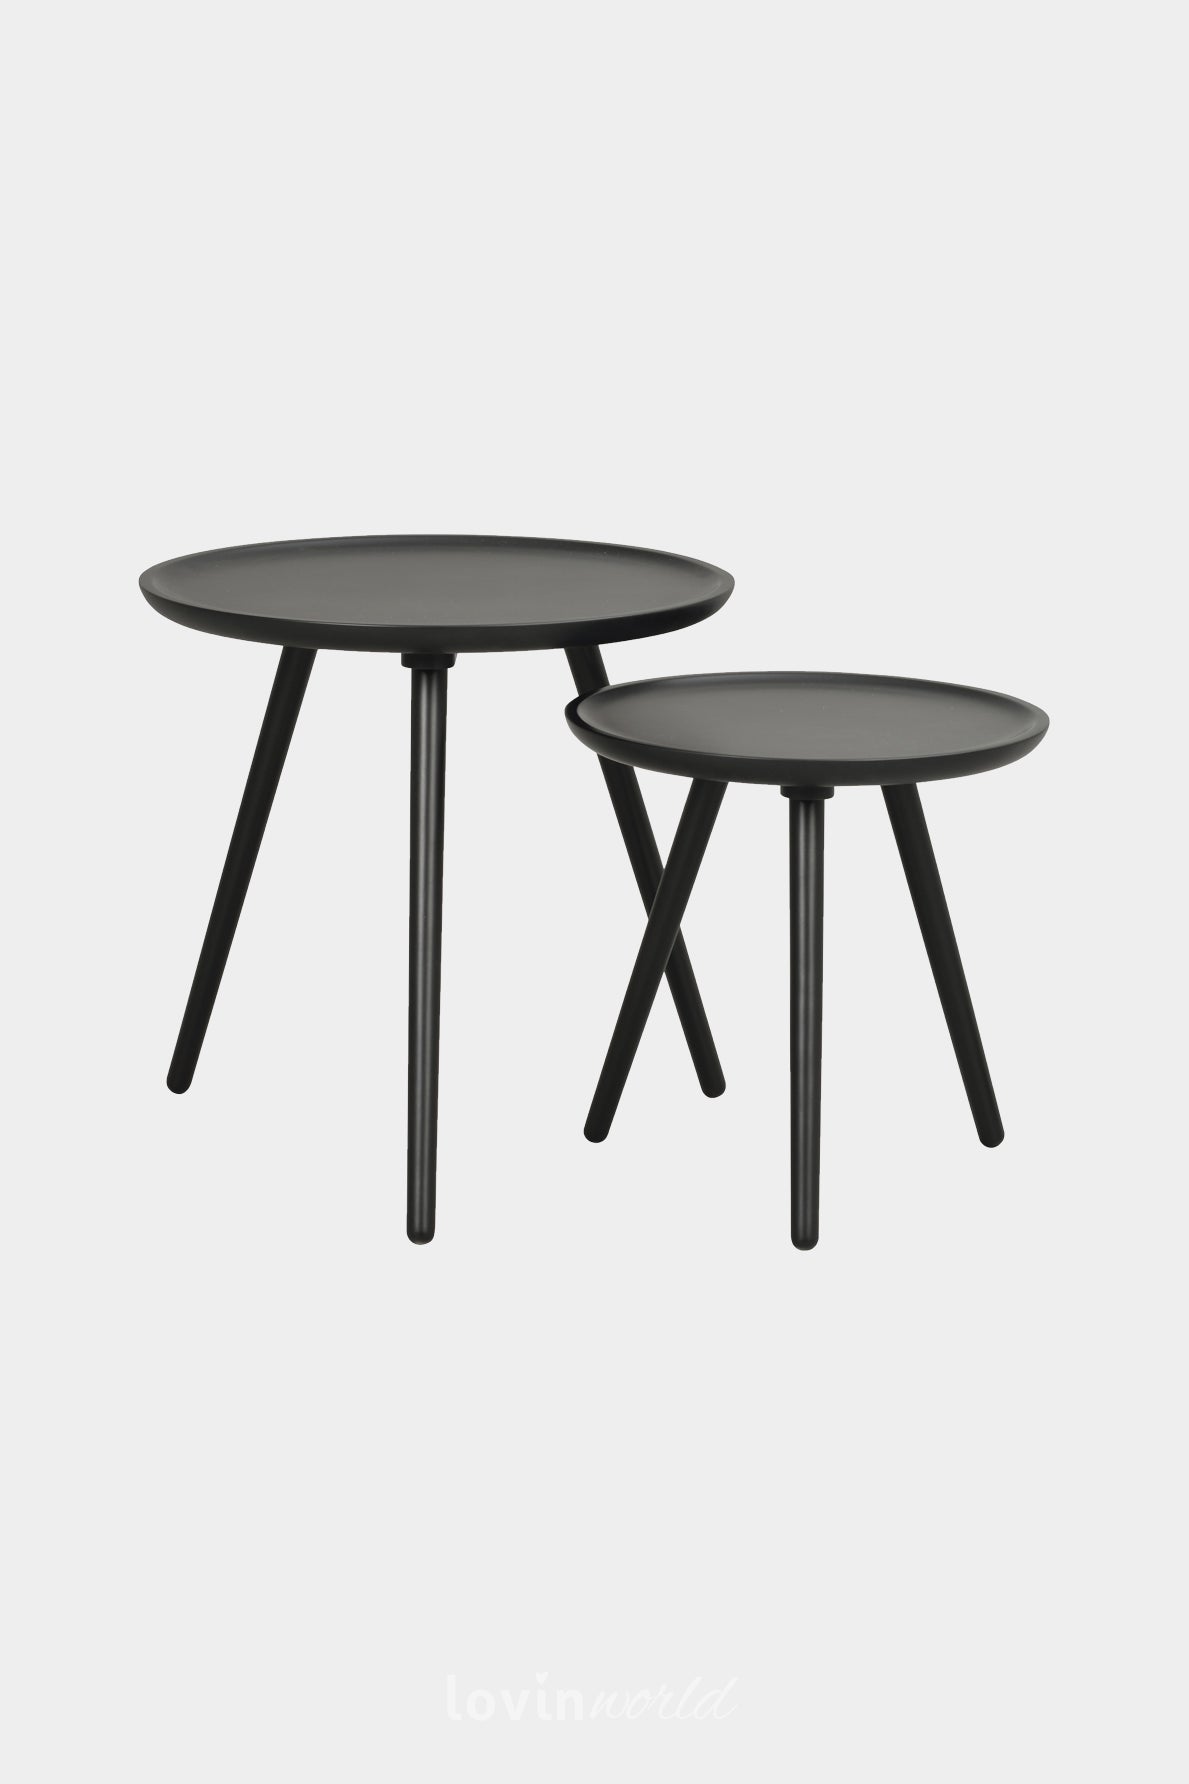 2 tavoli da caffè Daisy, in colore nero, 50x50 cm.-LovinWorld